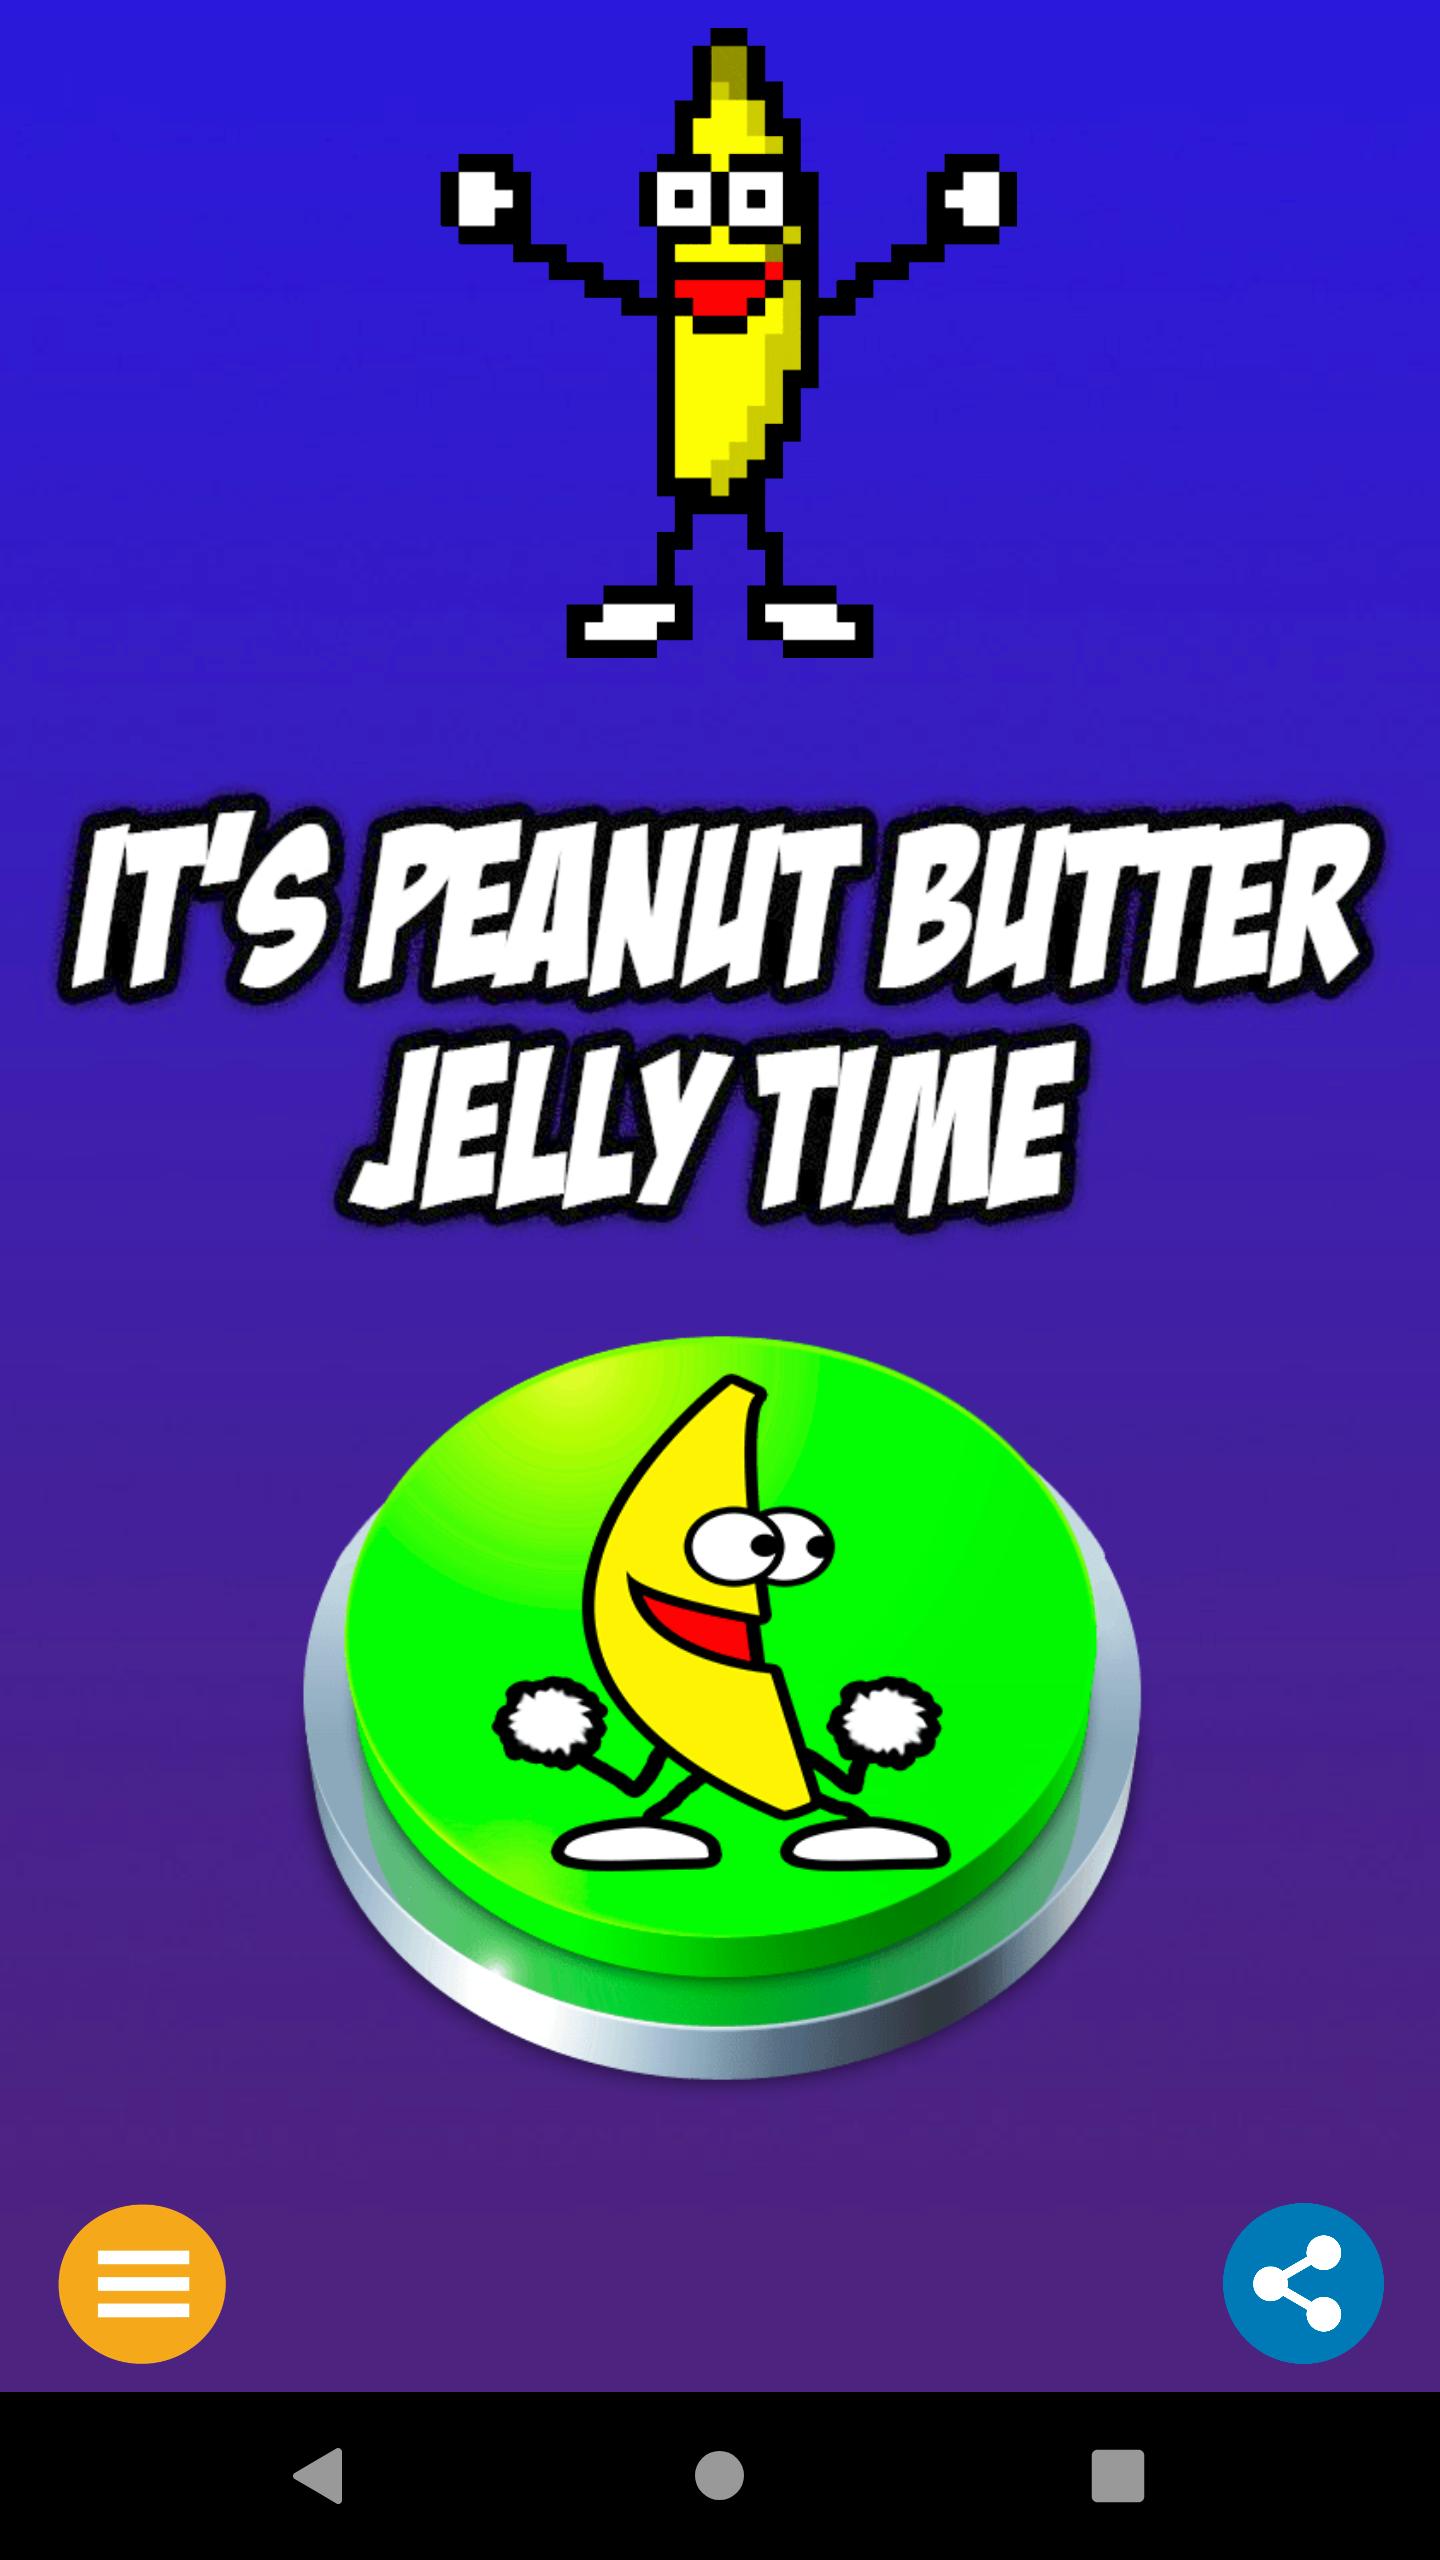 Banana Jelly time. Peanut Jelly time. Peanut Butter Jelly time меме. Peanut Butter Jelly time Roblox.